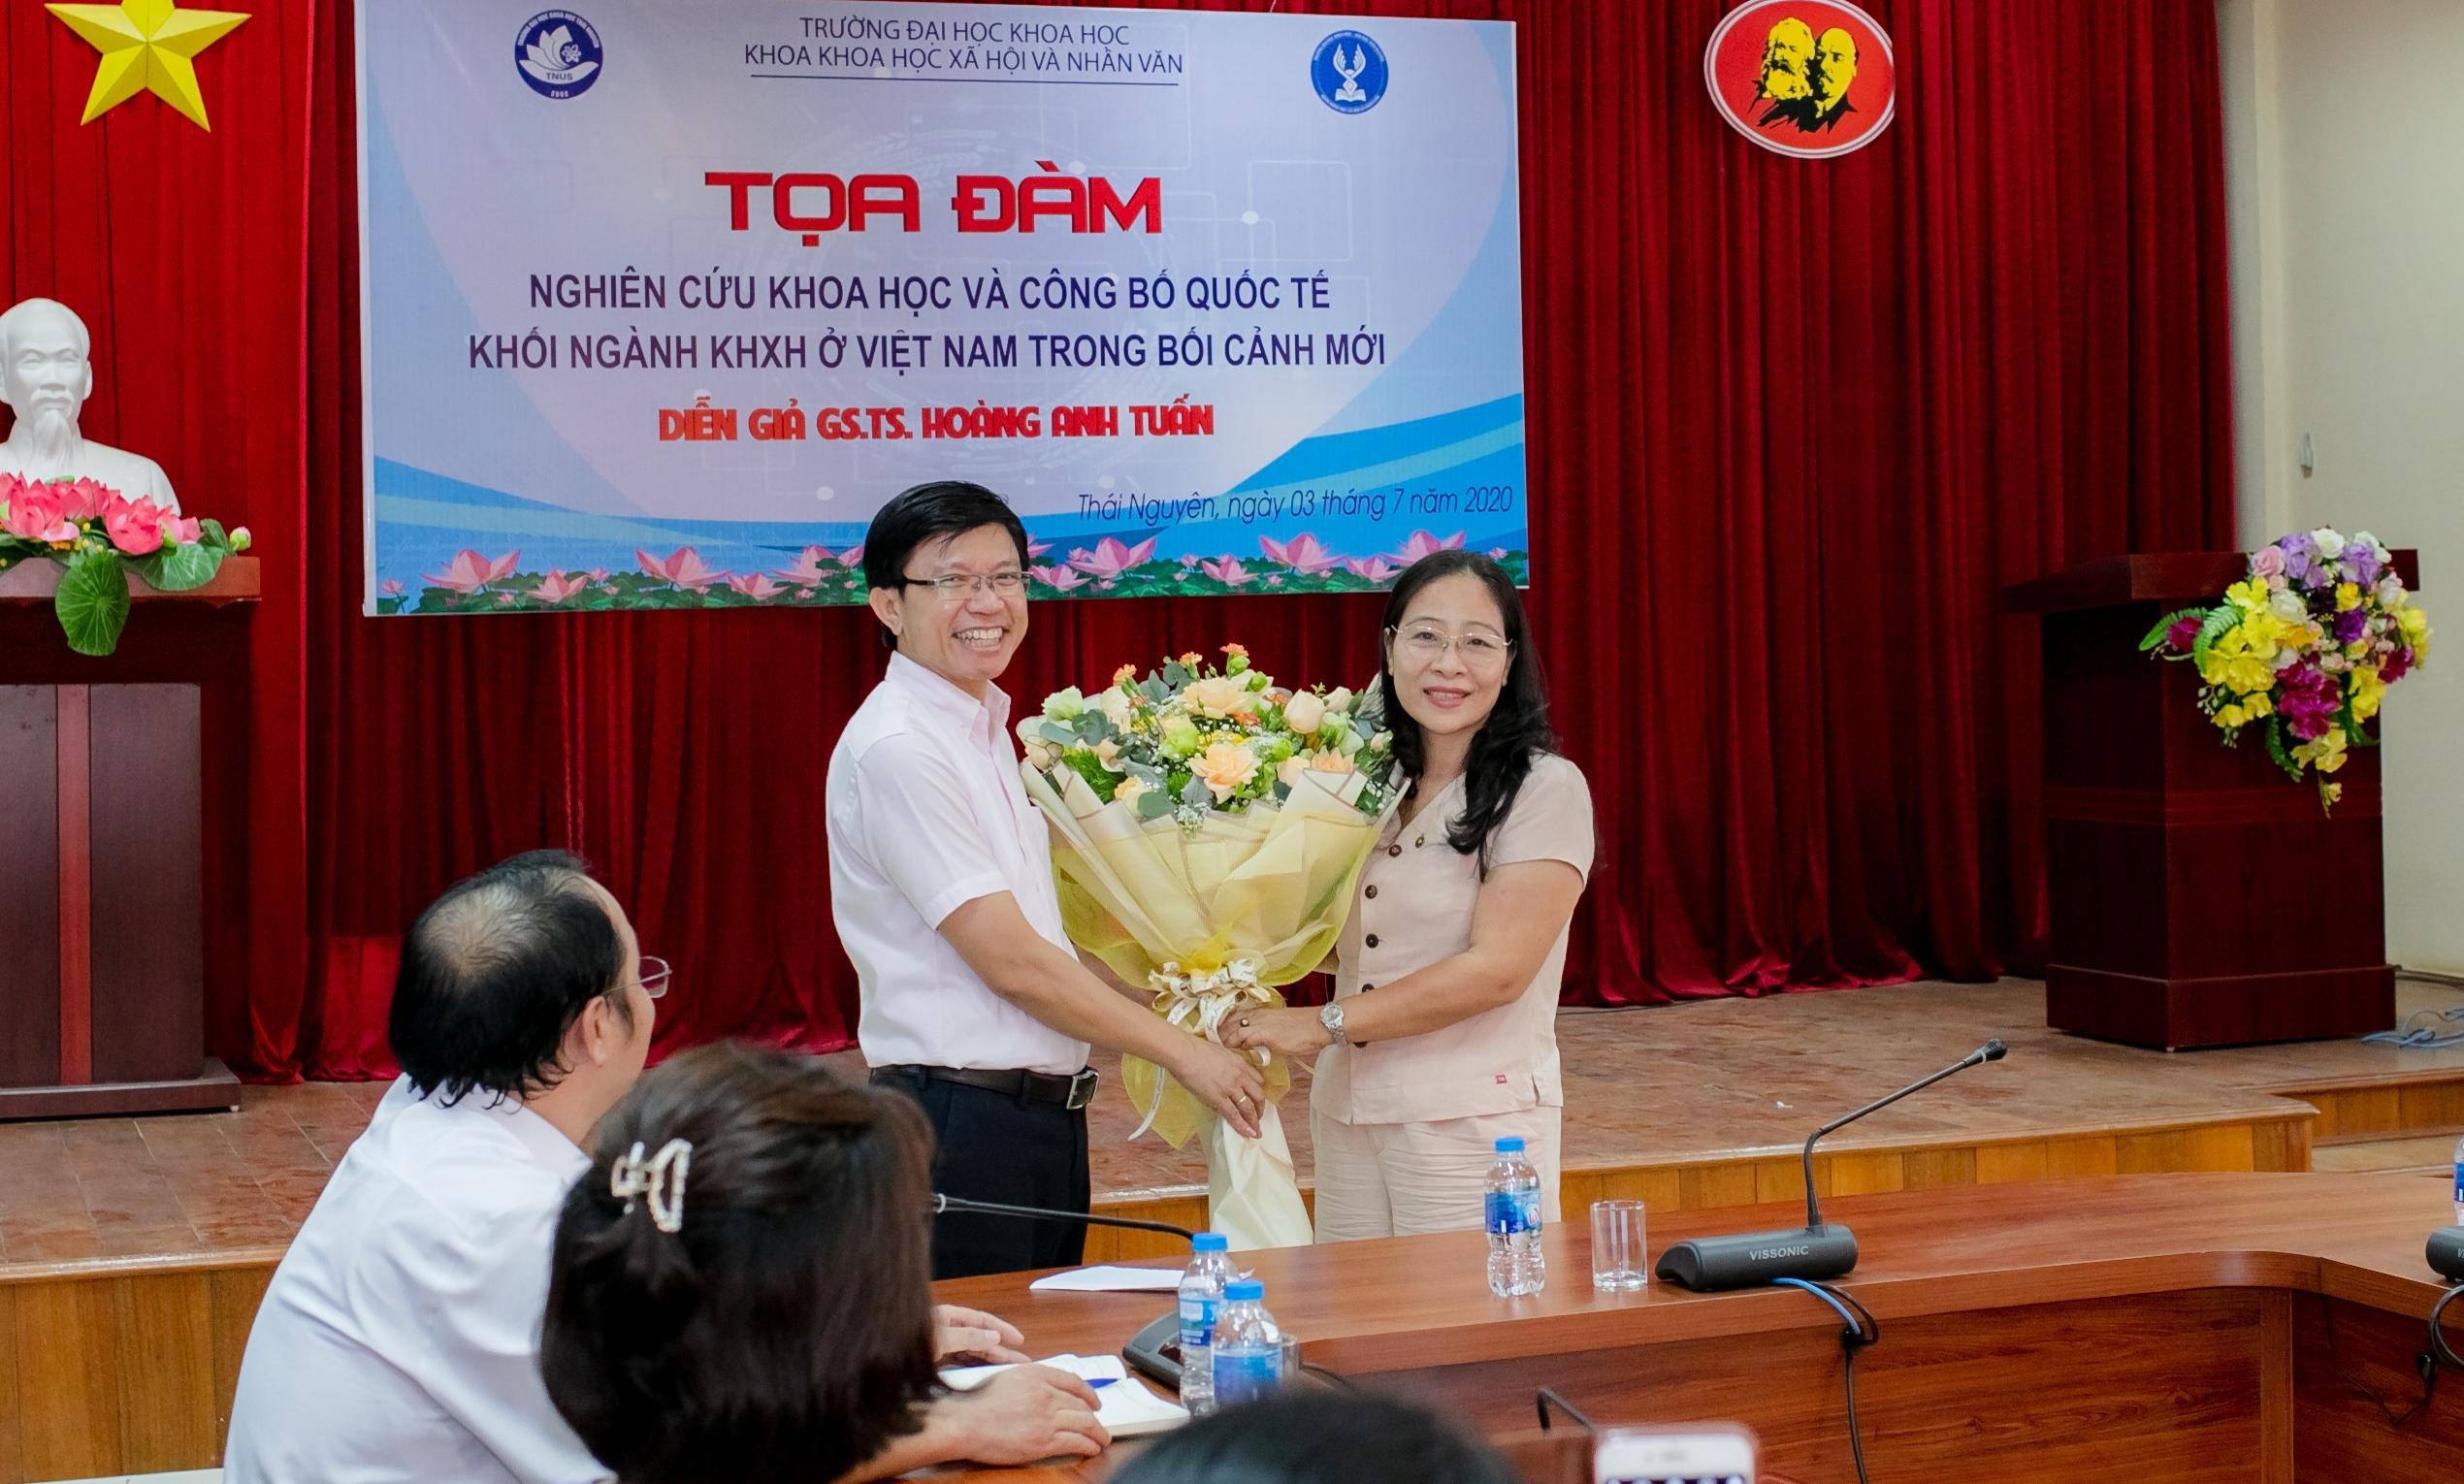 PGS. TS. Phạm Thị Phương Thái tặng hoa cảm ơn GS. Hoàng Anh Tuấn